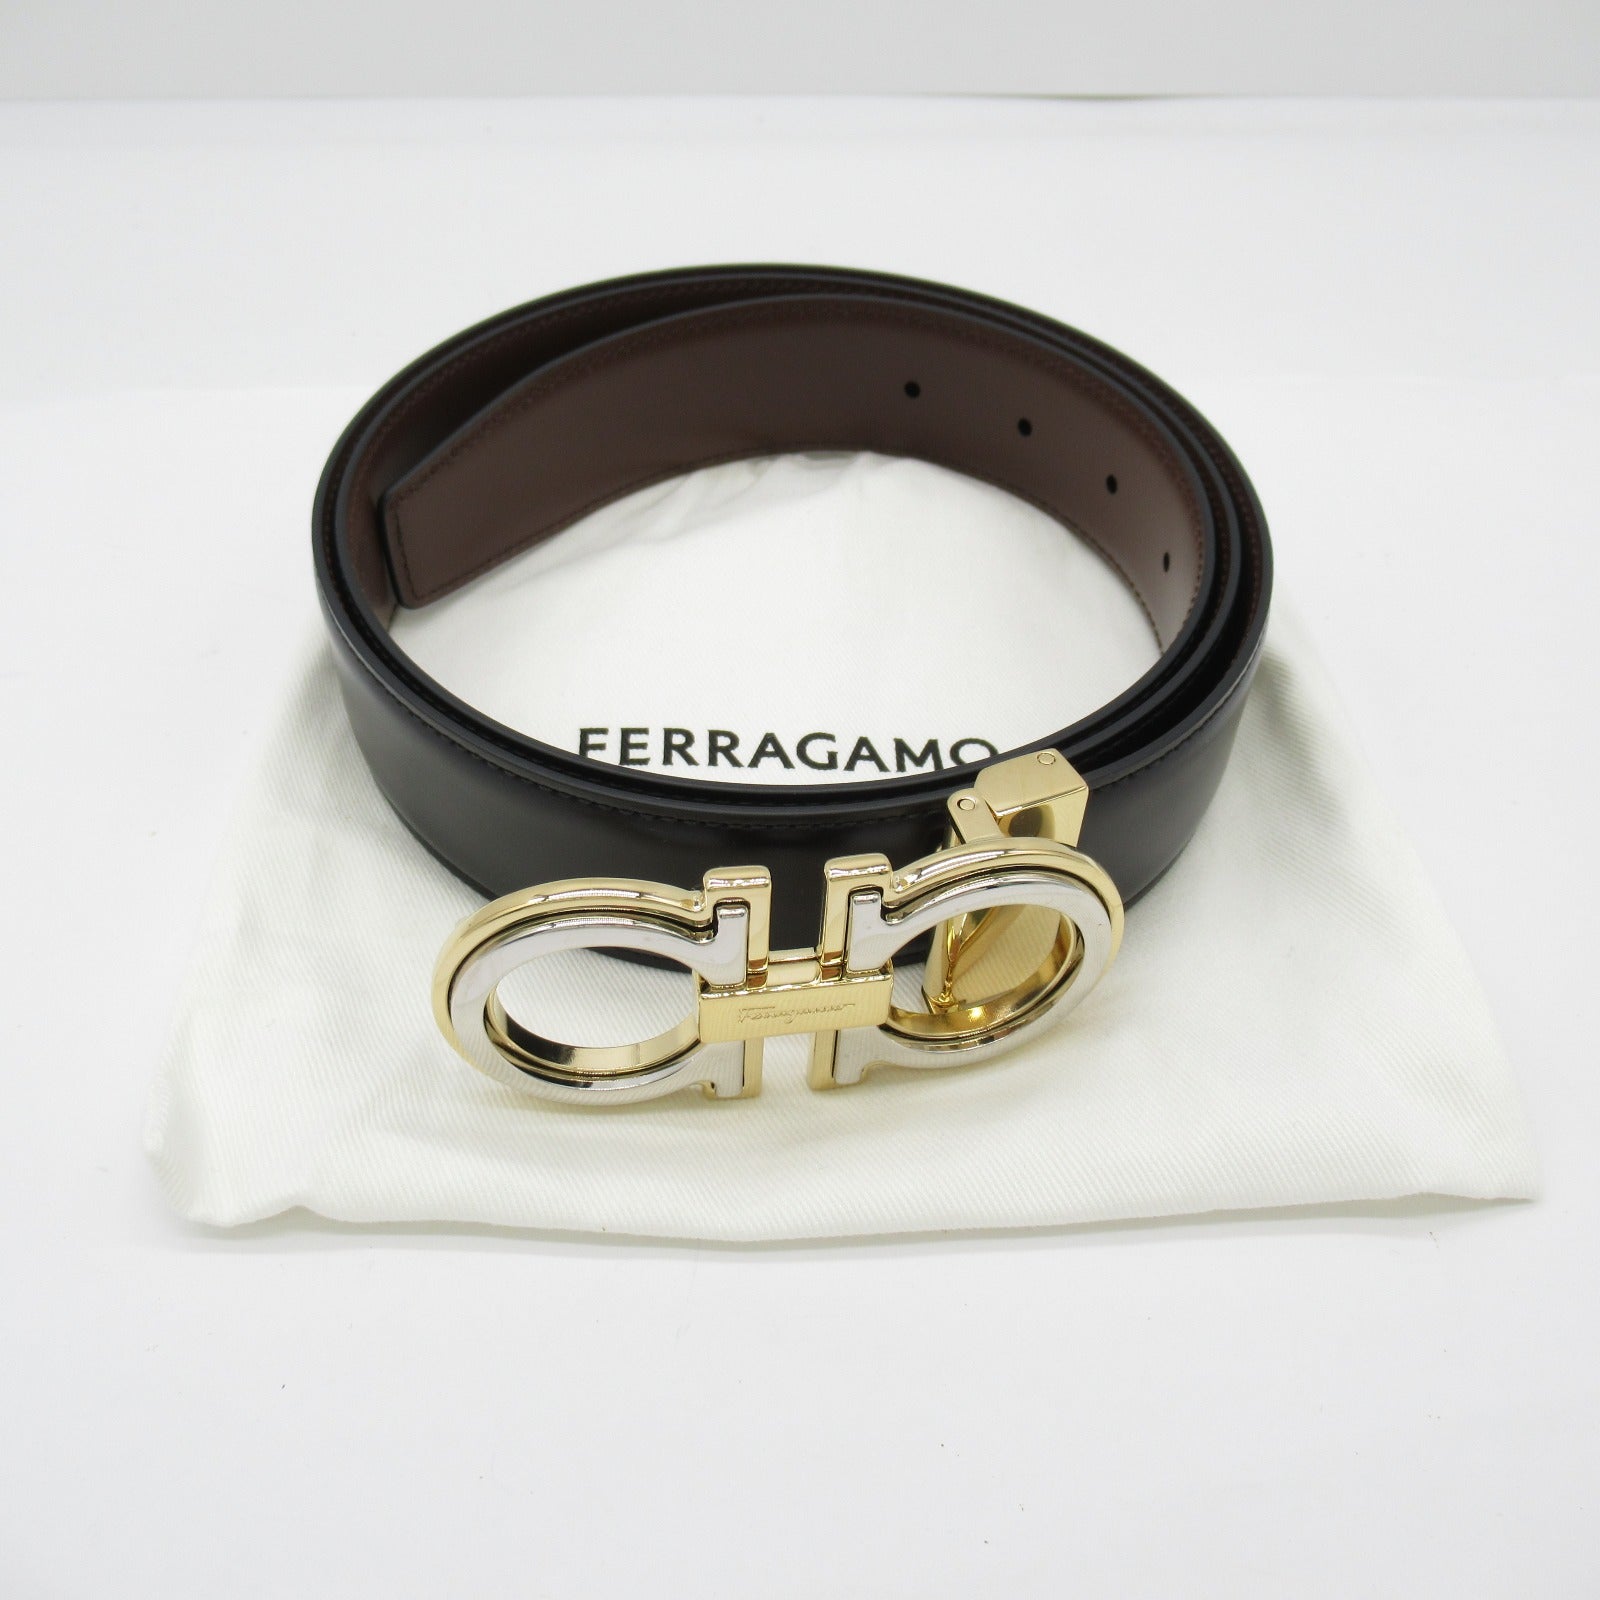 Salvatore Ferragamo Belt Belt Clothes For Mens Black/Brown 67A254764187C110